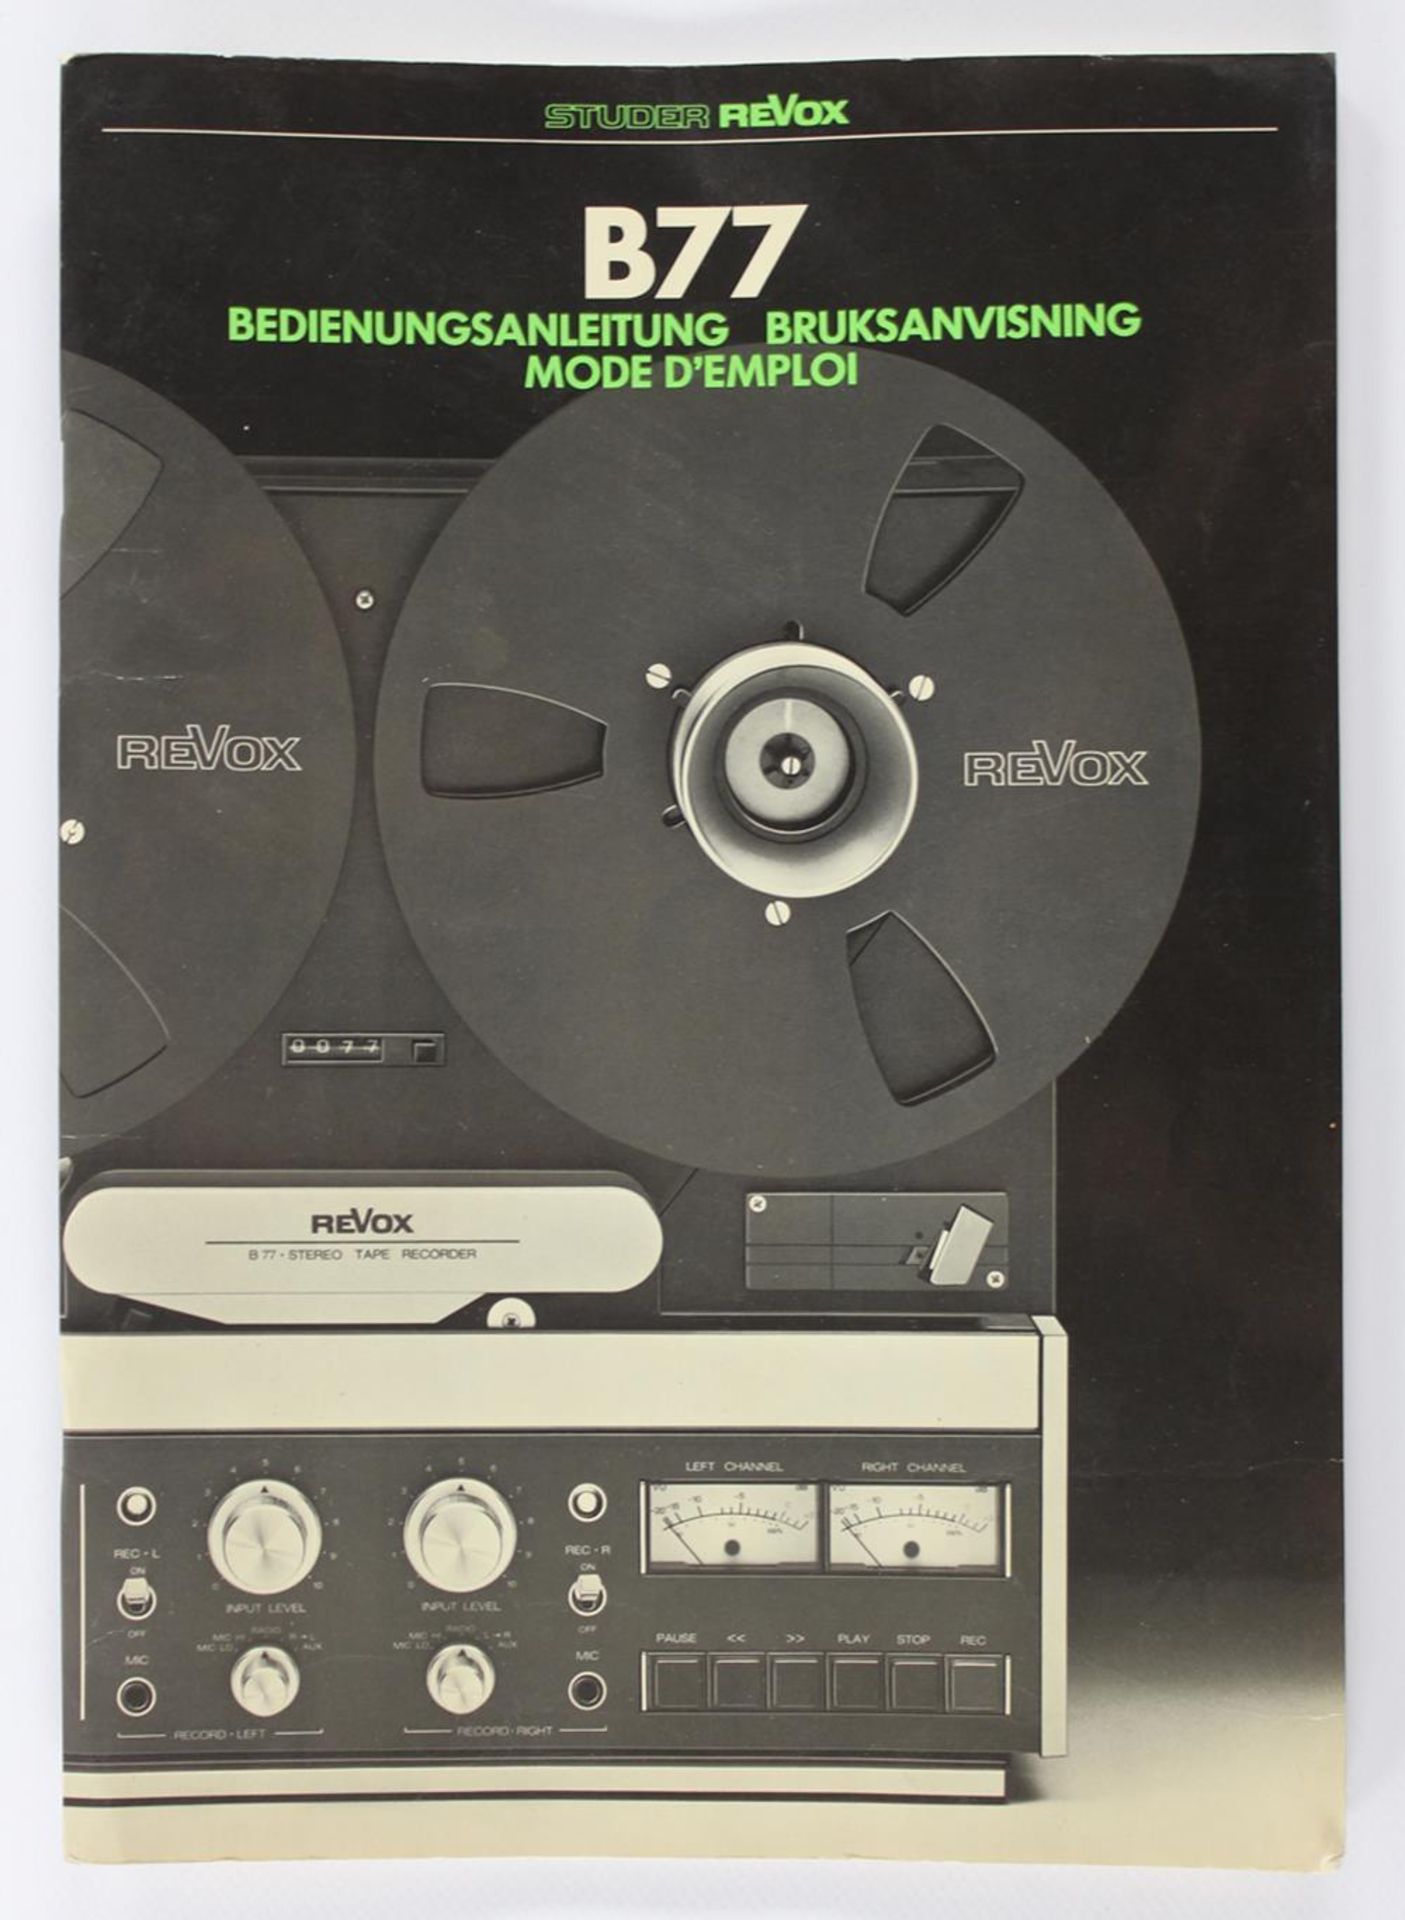 Revox B77 Tape RecorderBandmaschine von Revox mit Original Acrylblende u. Anleitung. Ehemaliges - Bild 3 aus 3